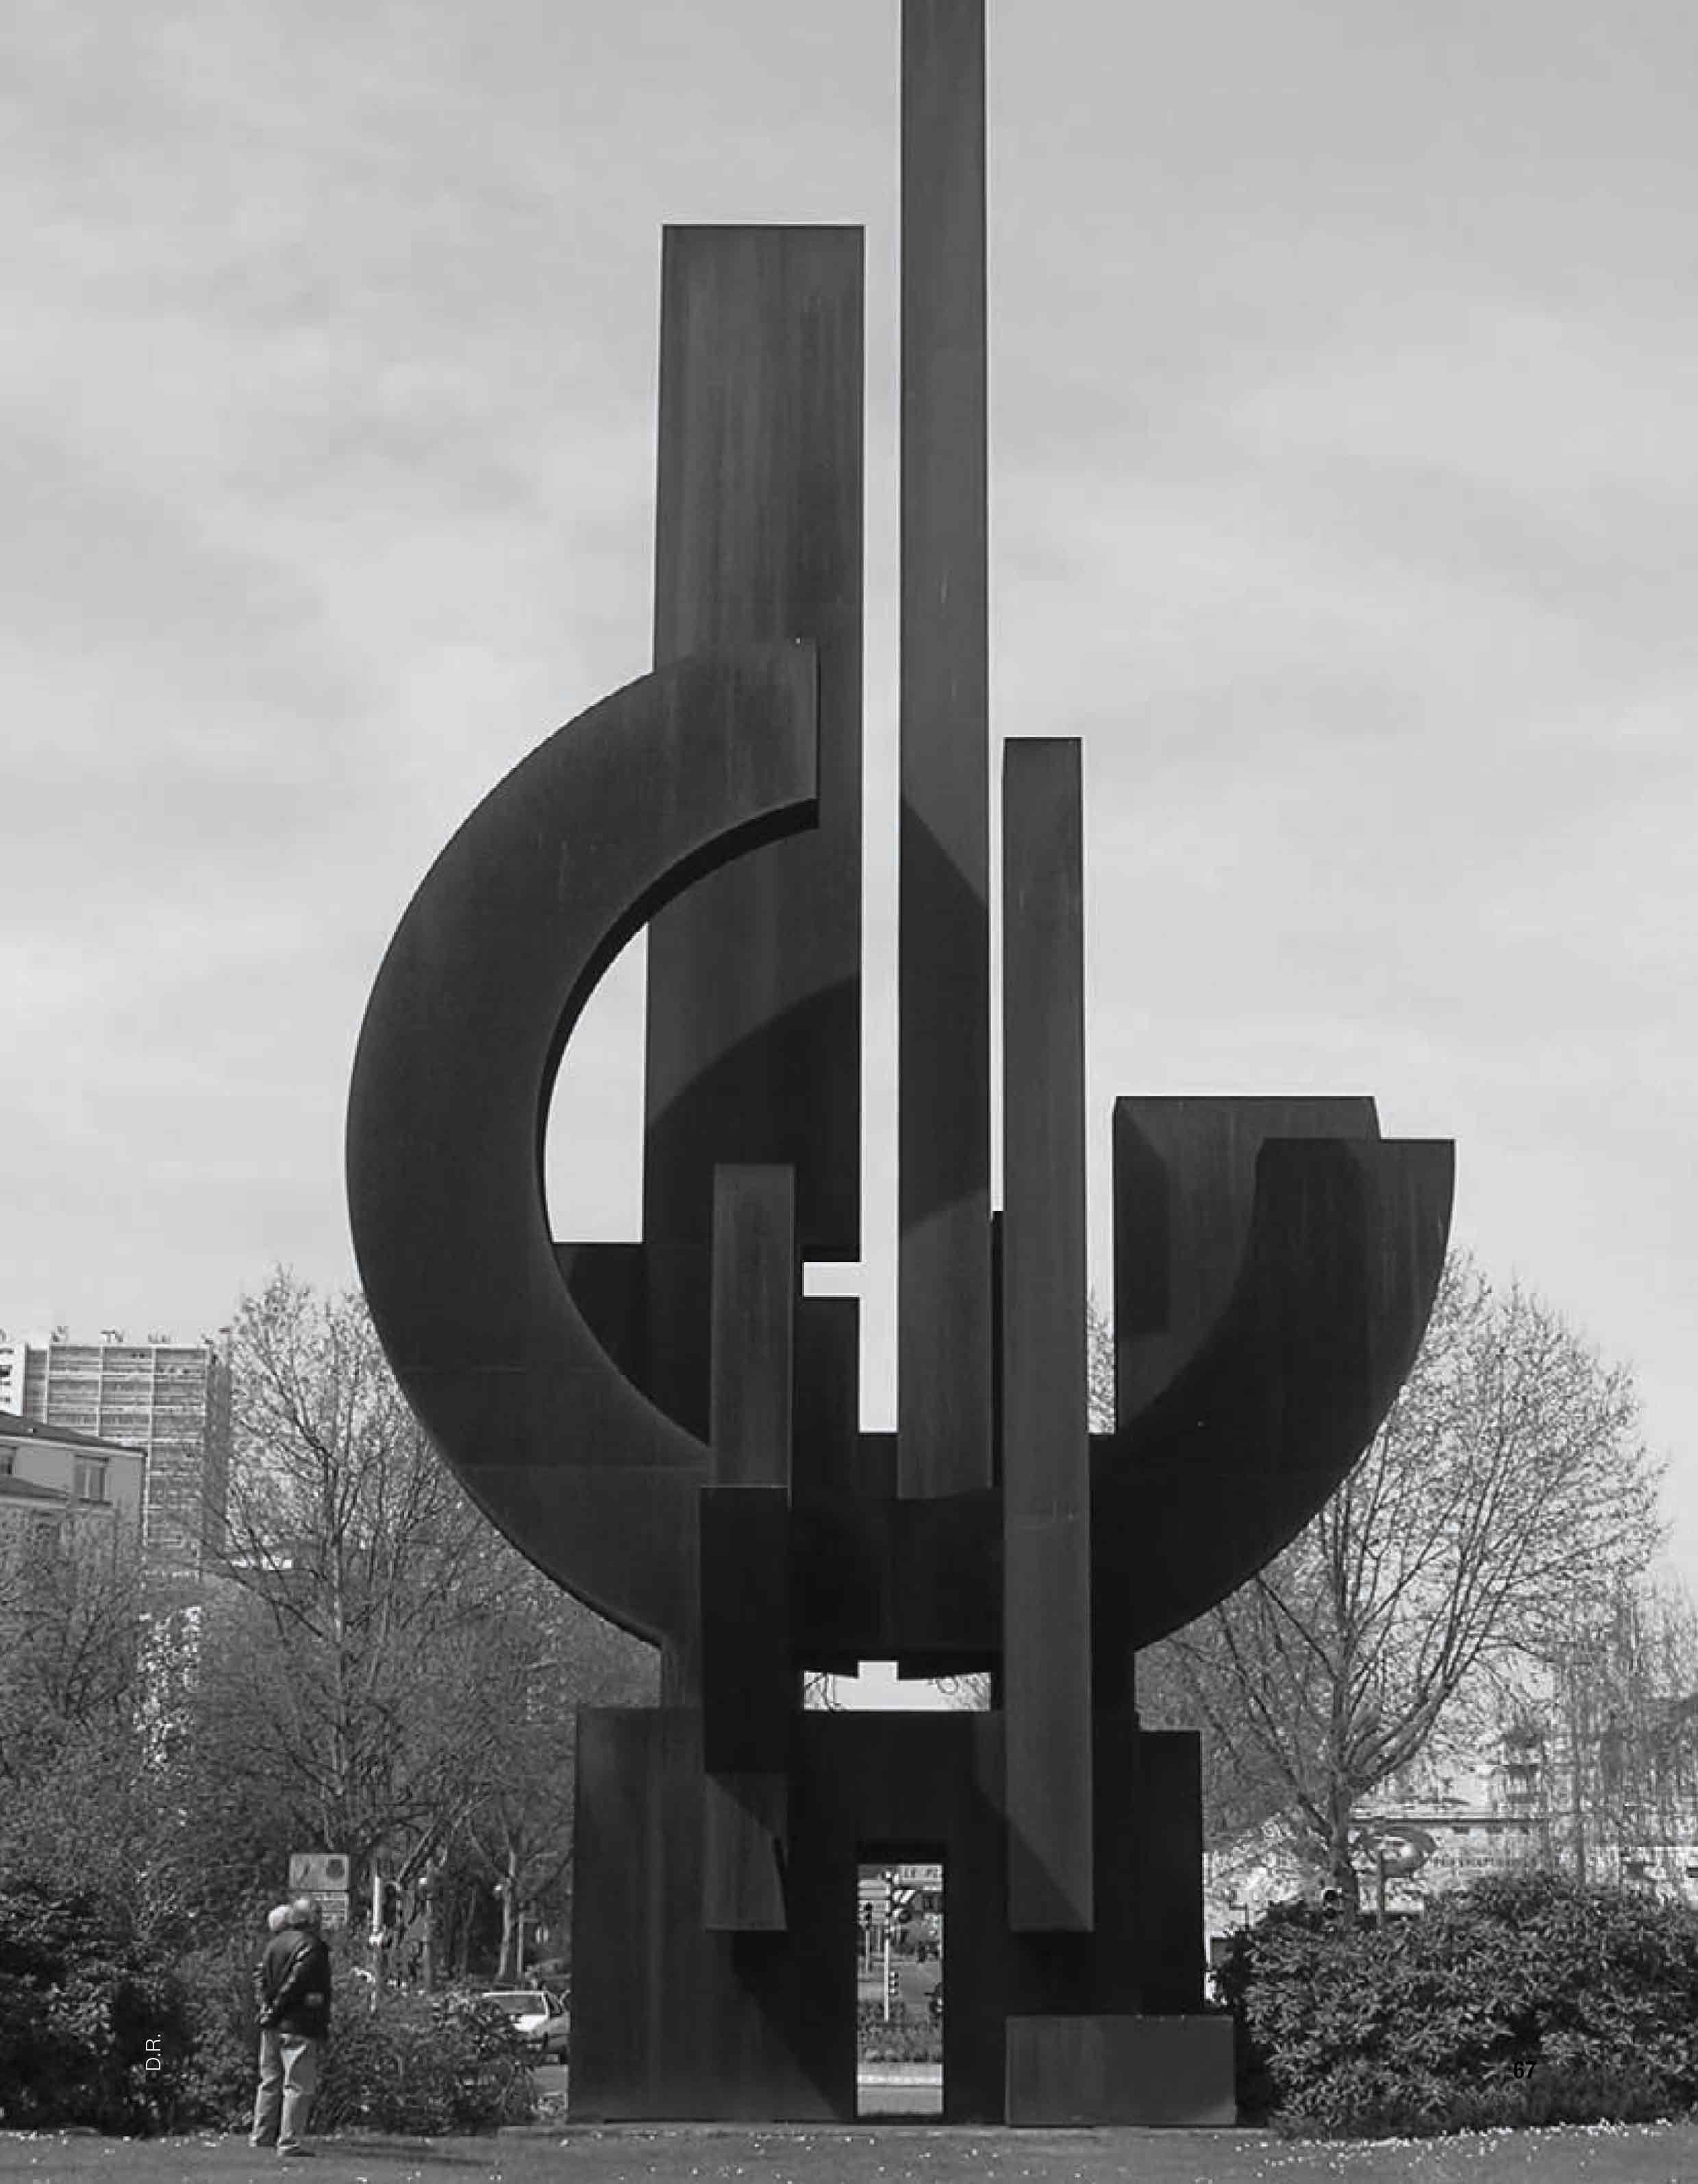 ヨーロッパ最長の公共金属彫刻、フランス・パリ近郊に設置されたFontenay-sous-boisの作品「自由」(La Liberté)。©Claude Gaspari